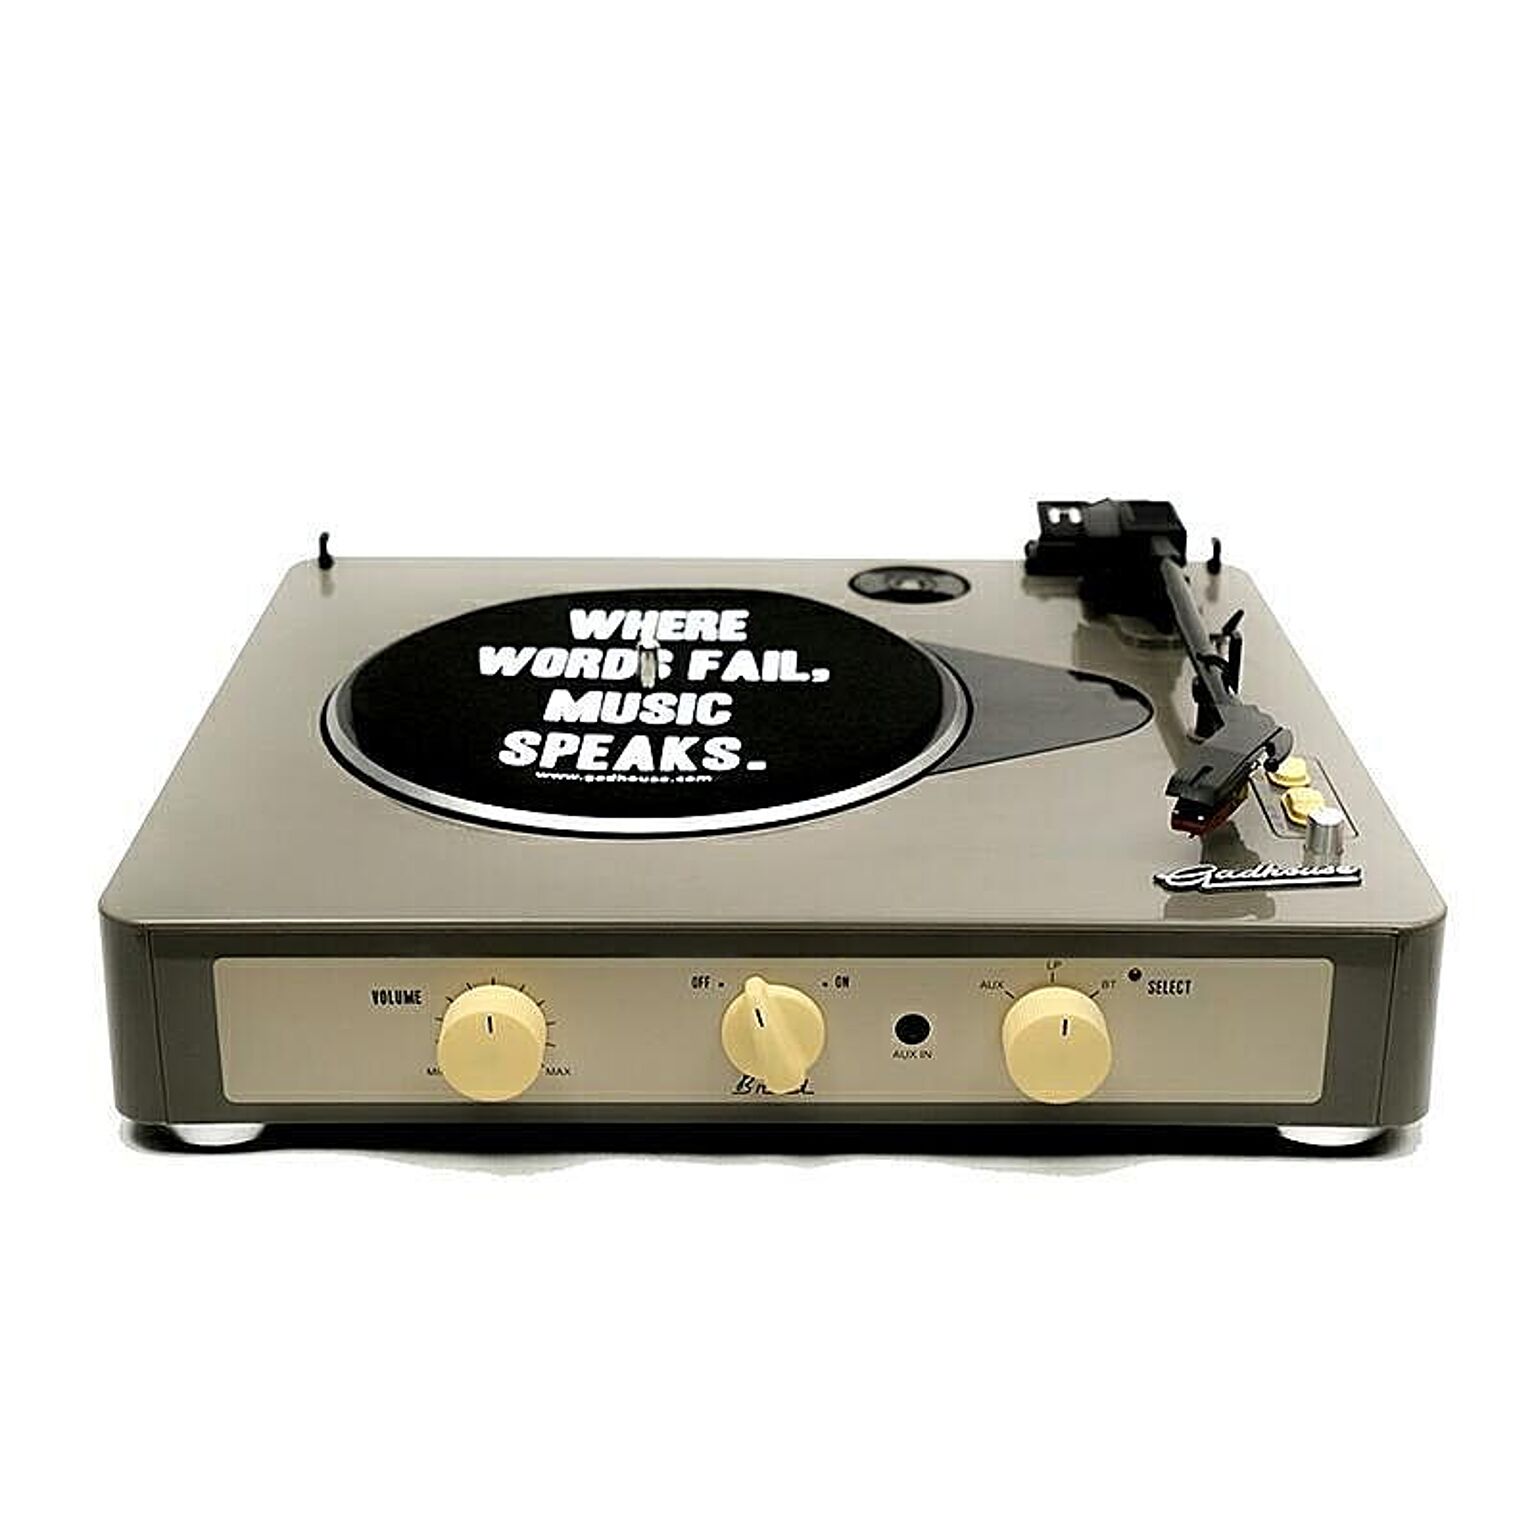 Brad Retro record player ブラッド レトロレコードプレーヤー GAD001 ターンテーブル/スピーカー内蔵/78回転対応/SP版対応/ベルトドライブ/Bluetooth